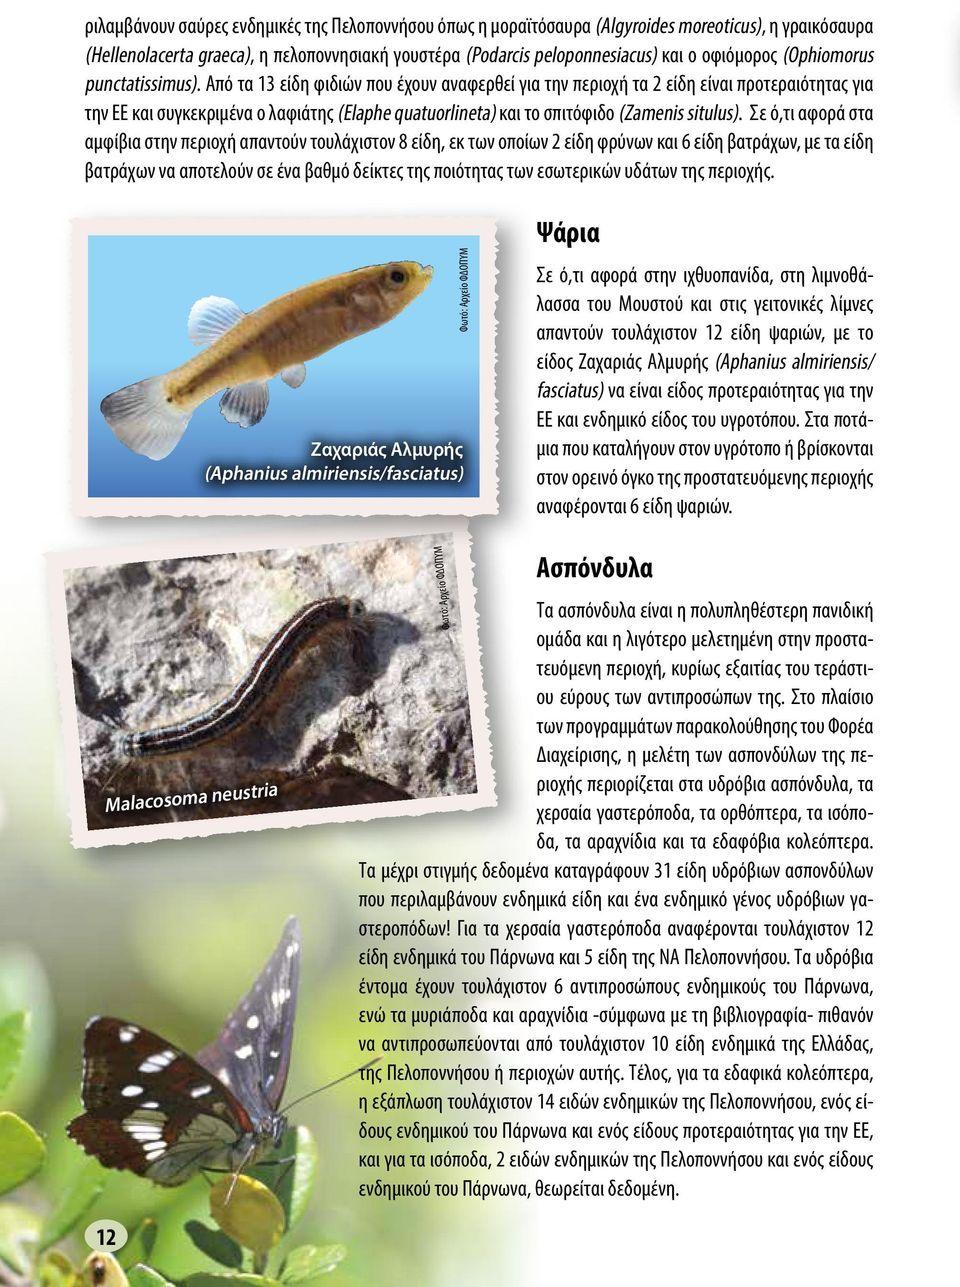 Από τα 13 είδη φιδιών που έχουν αναφερθεί για την περιοχή τα 2 είδη είναι προτεραιότητας για την ΕΕ και συγκεκριμένα ο λαφιάτης (Elaphe quatuorlineta) και το σπιτόφιδο (Zamenis situlus).